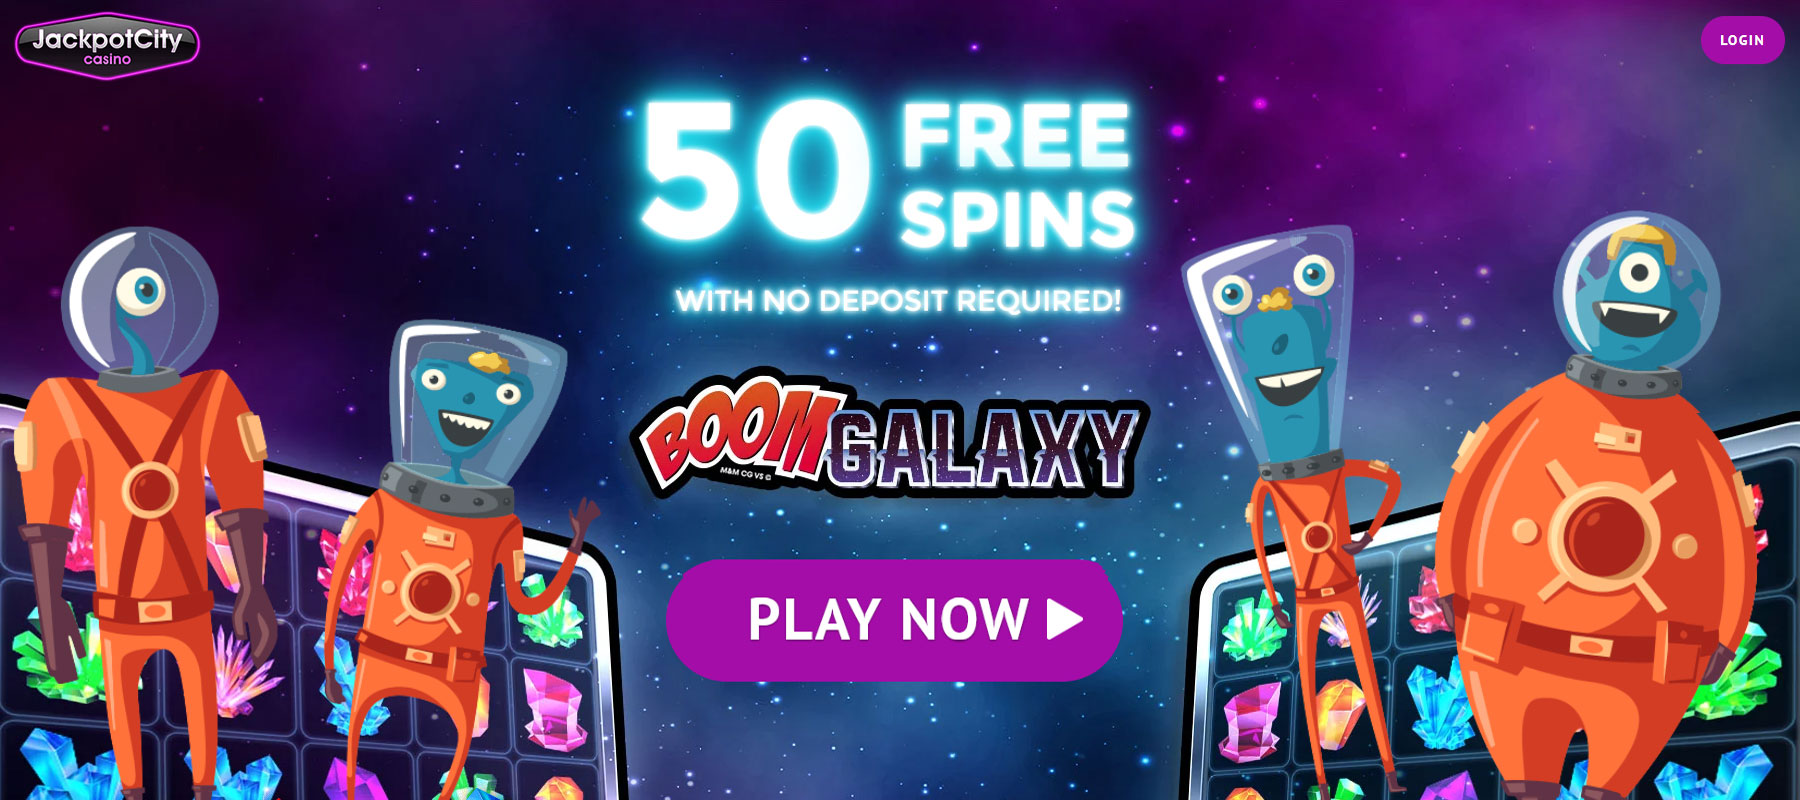 deposit 10 get 200 free spins